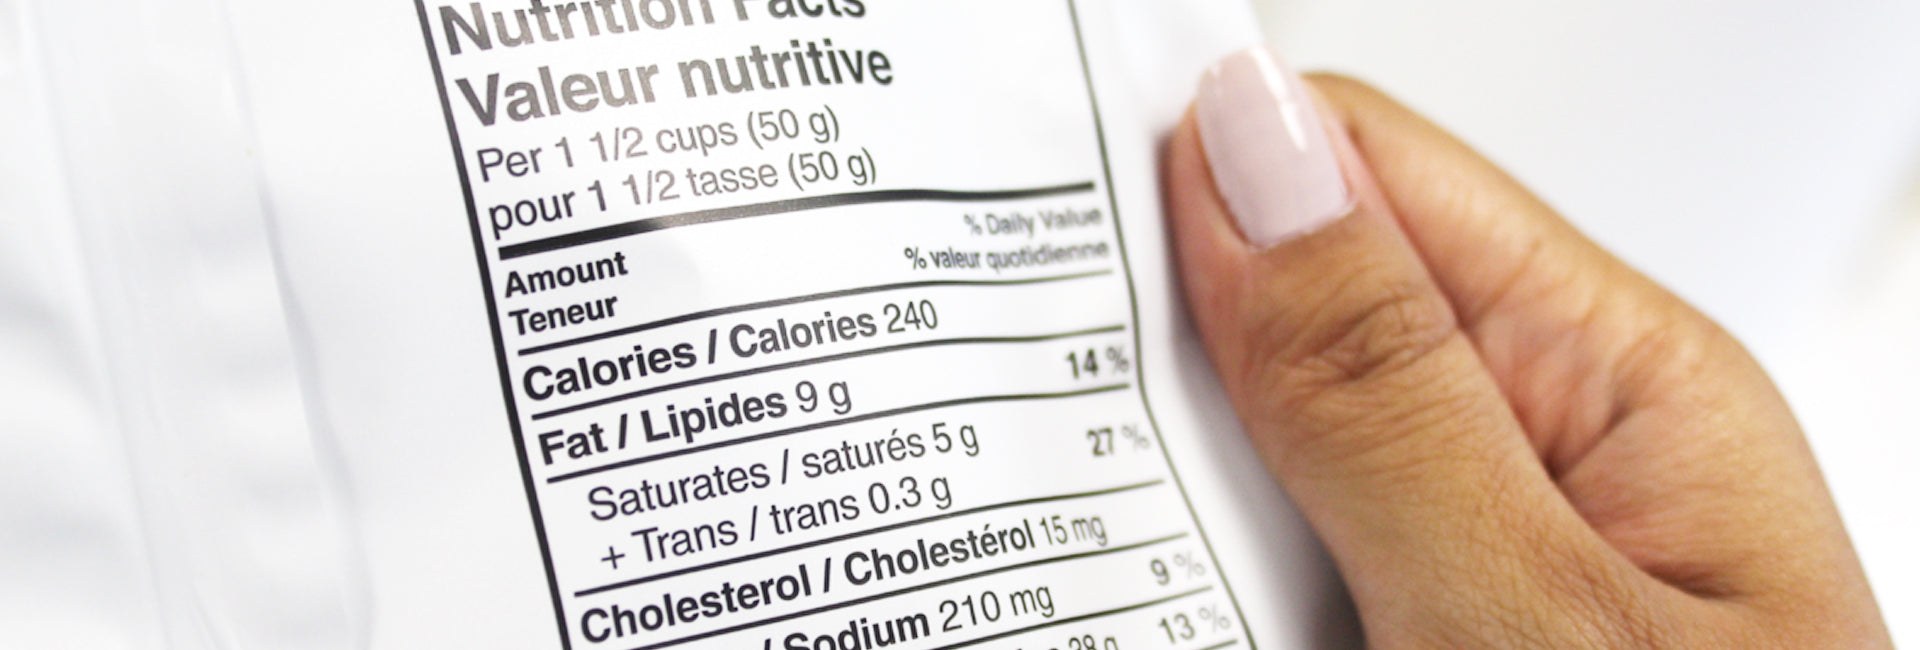 Composition nutritionnelle et calories du Get 27 - Le blog